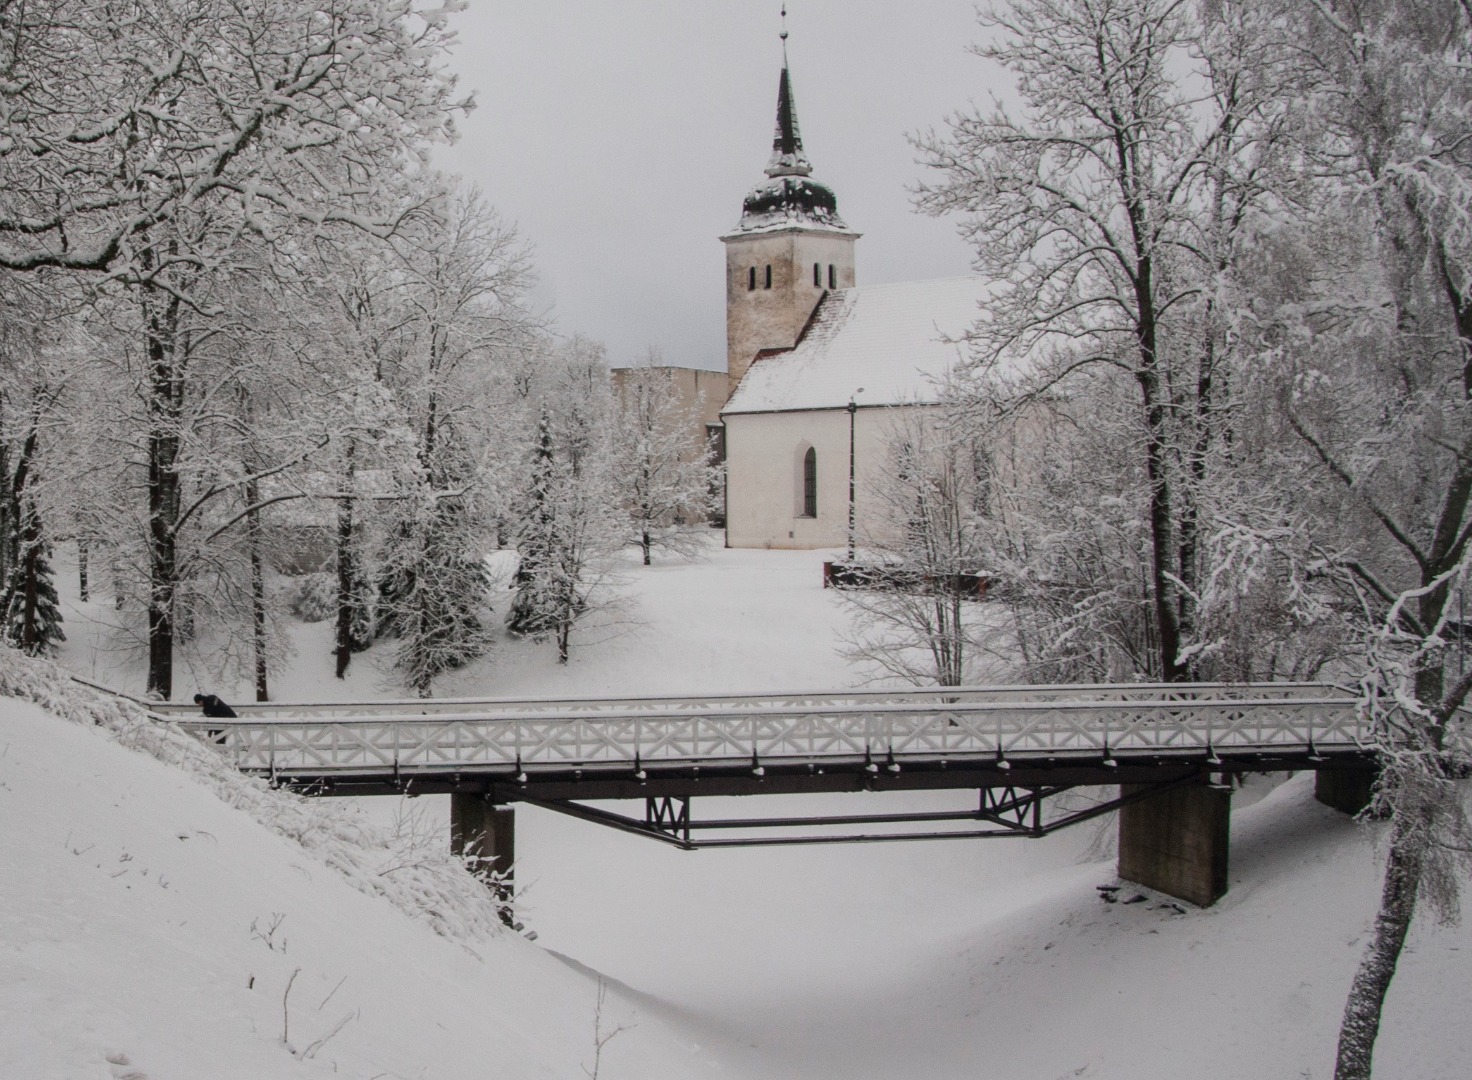 foto albumis, Viljandi, lossimäed, Varesesild, järve poolt,taga Jaani kirik, talv, u 1930, foto J. Riet rephoto